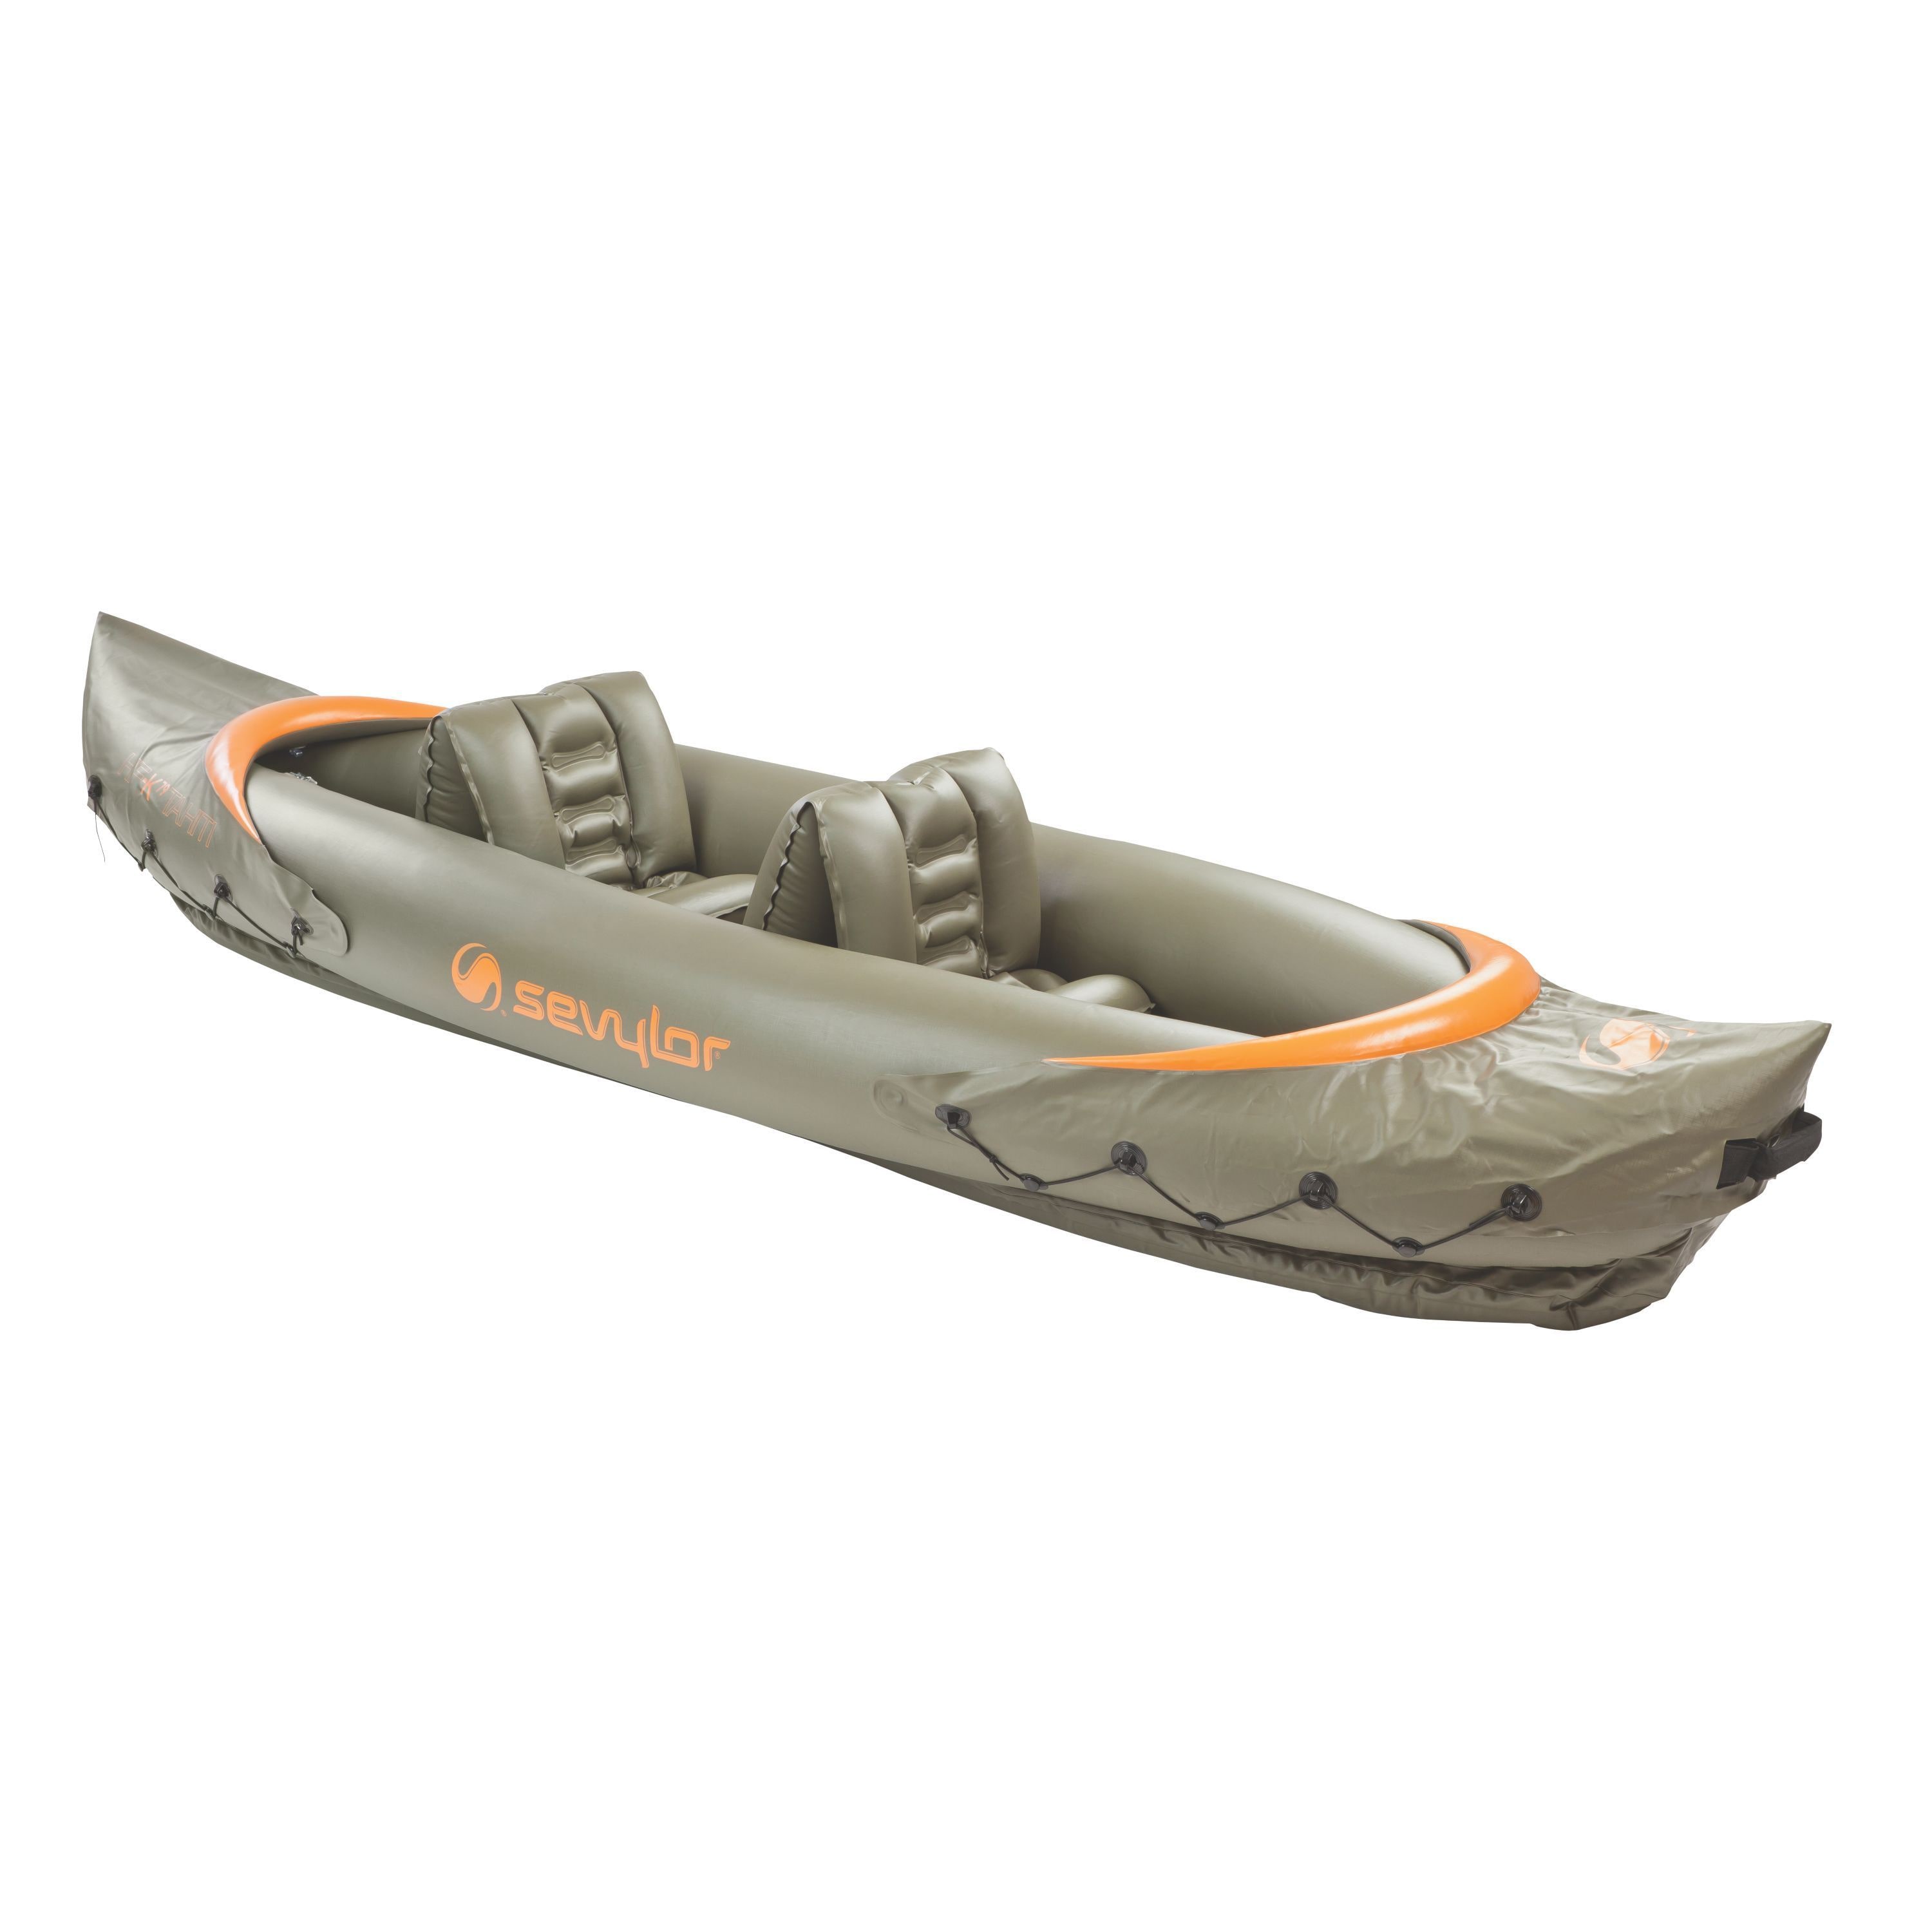 Sevylor Tahiti Fish/Hunt 2Person Inflatable Kayak